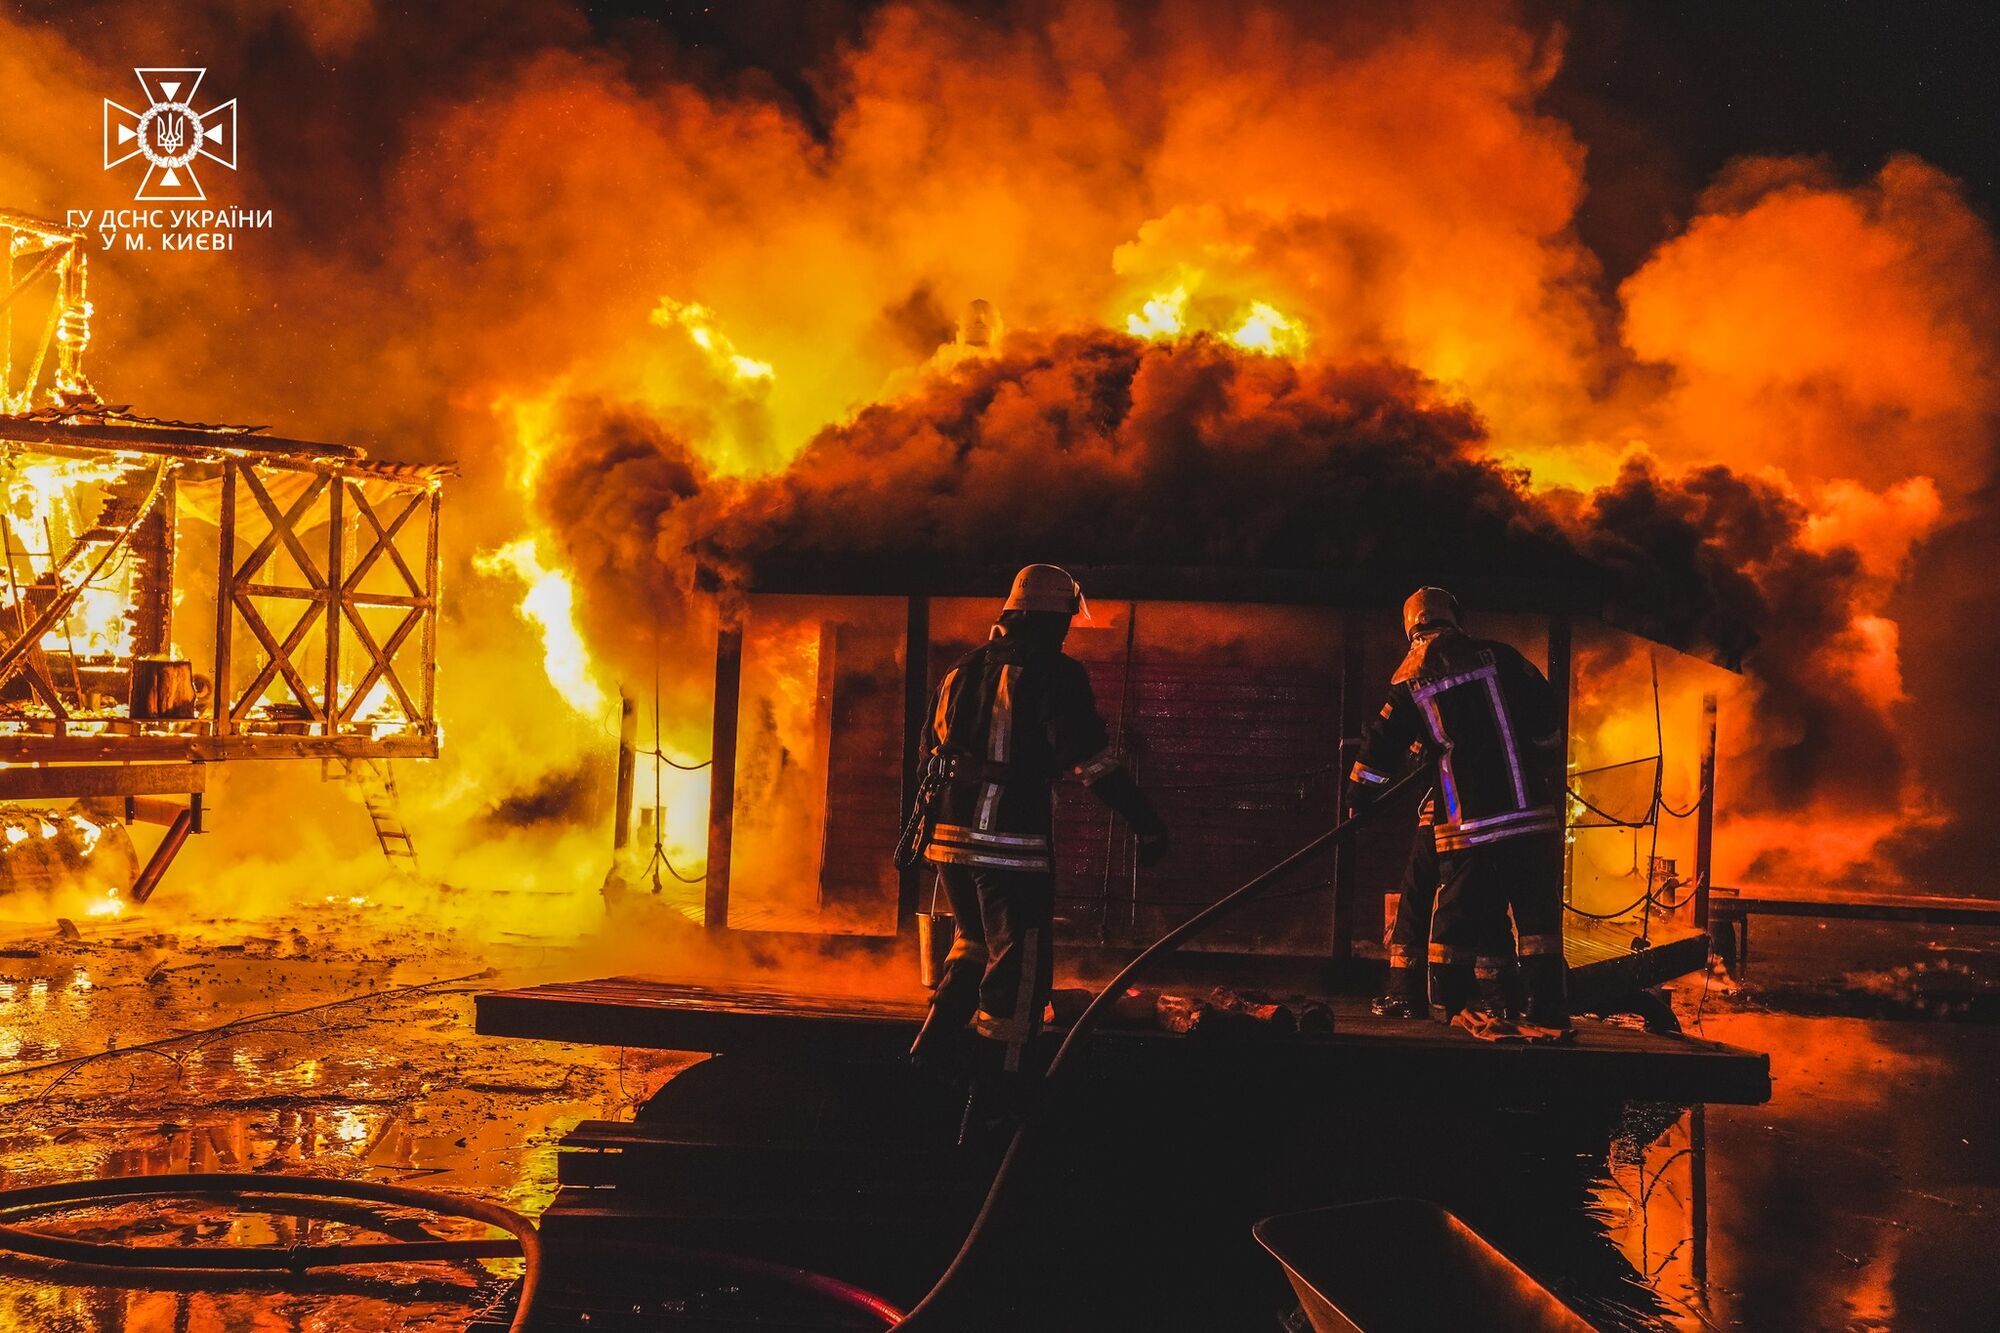 В Киеве произошел масштабный пожар на территории Гидропарка. Фото и видео